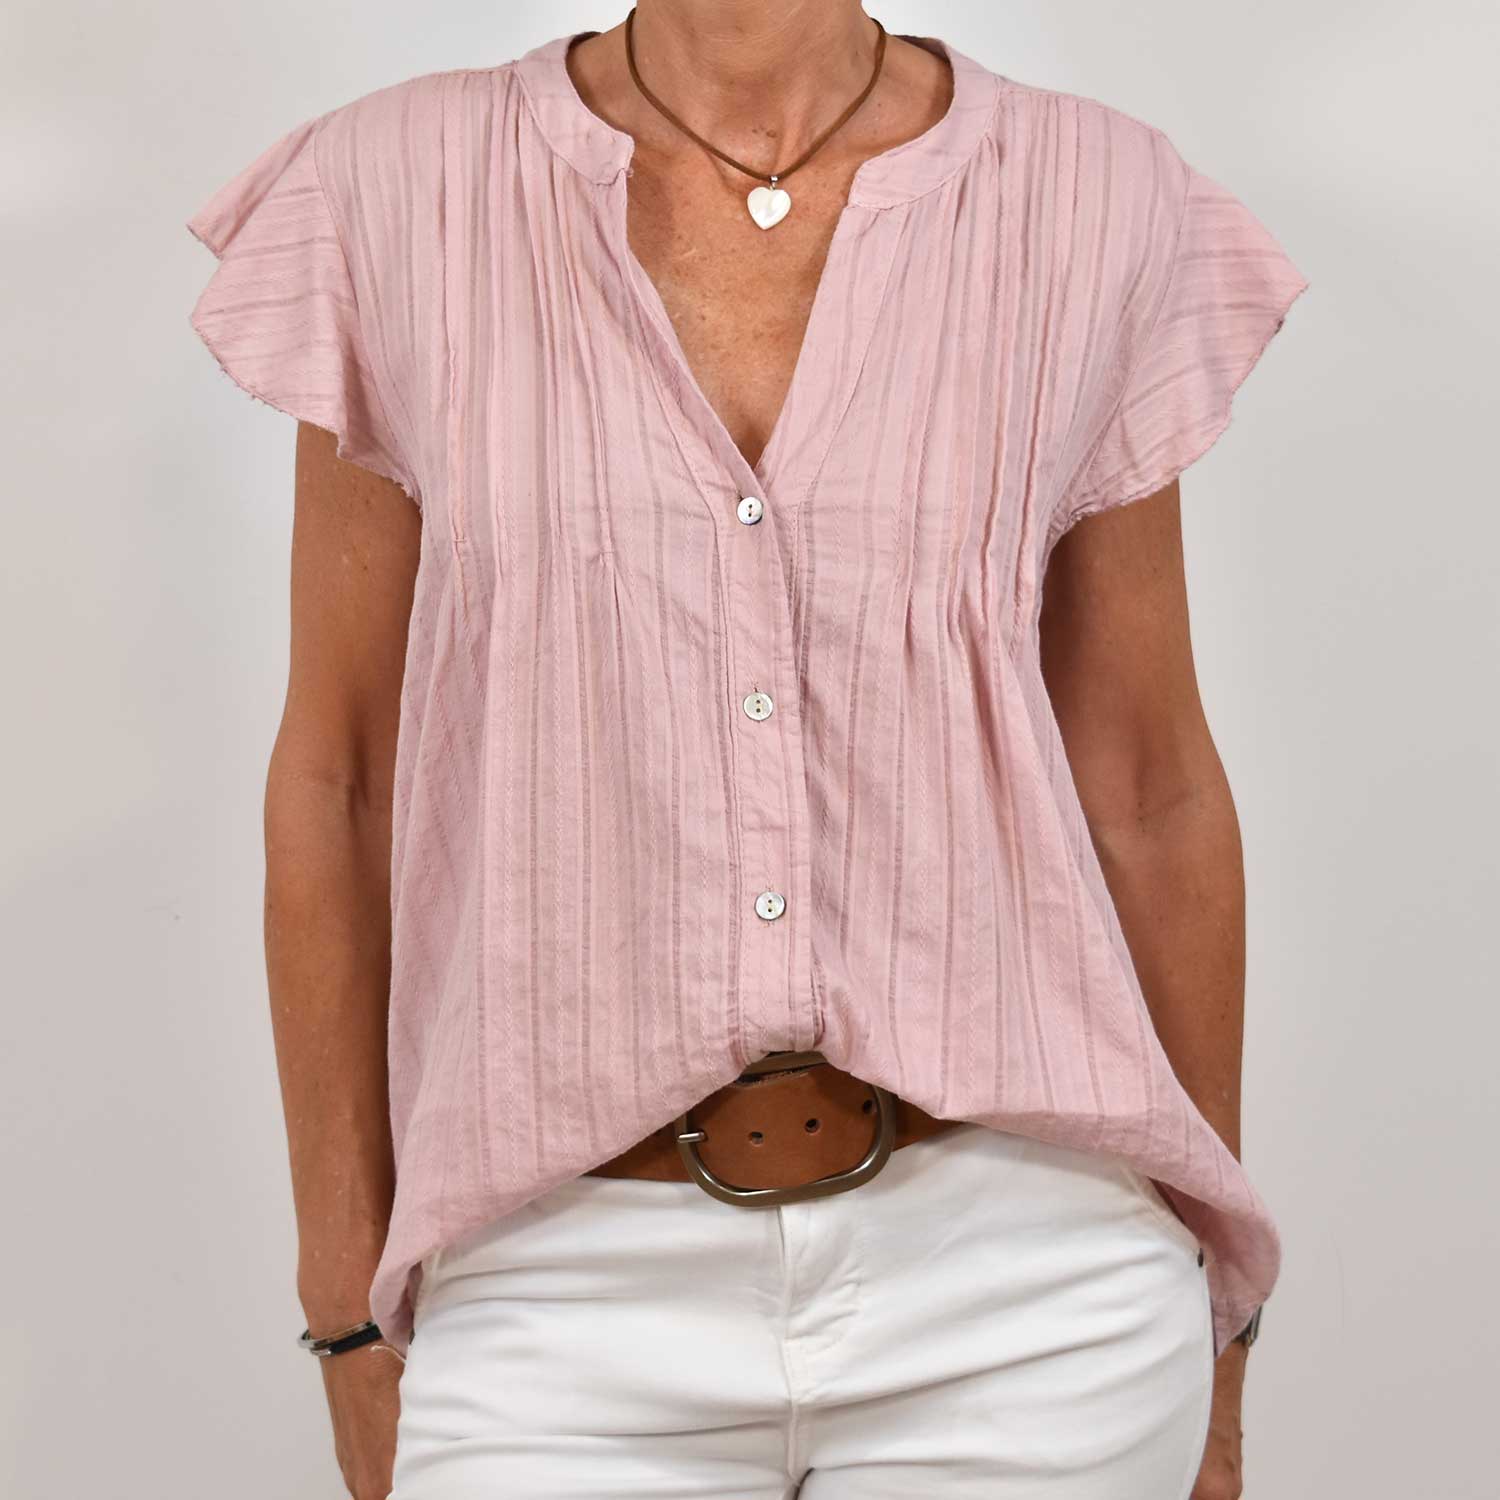 Pink ruffle texture shirt